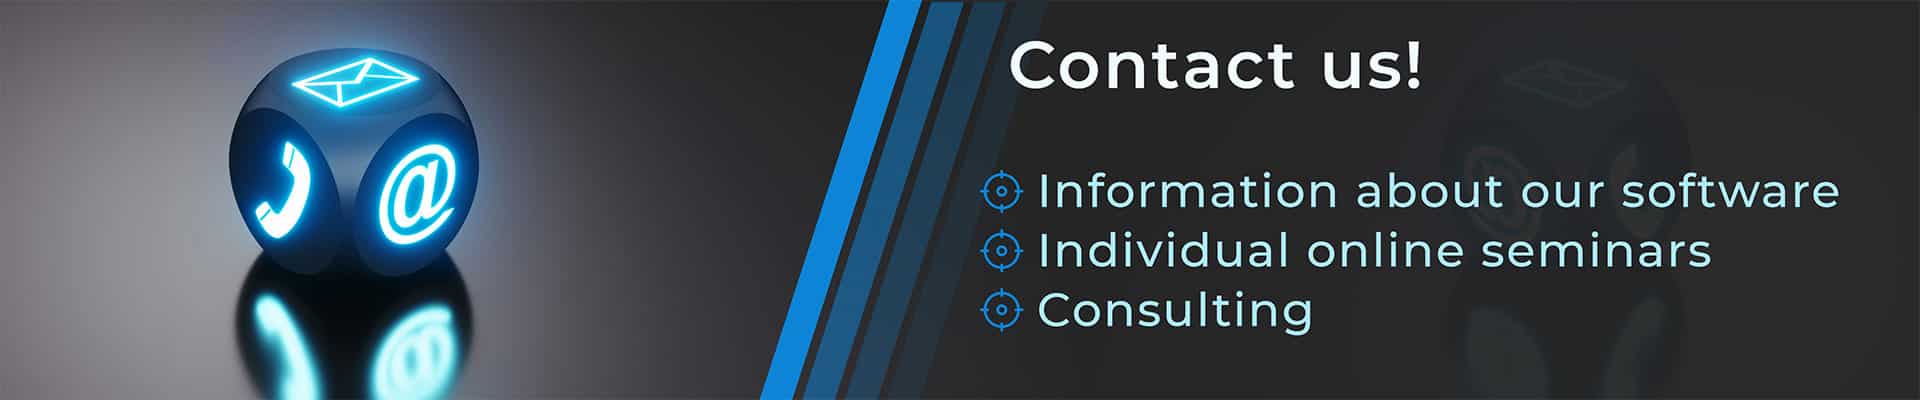 Innolytics-Innovation-Contakt-Platform